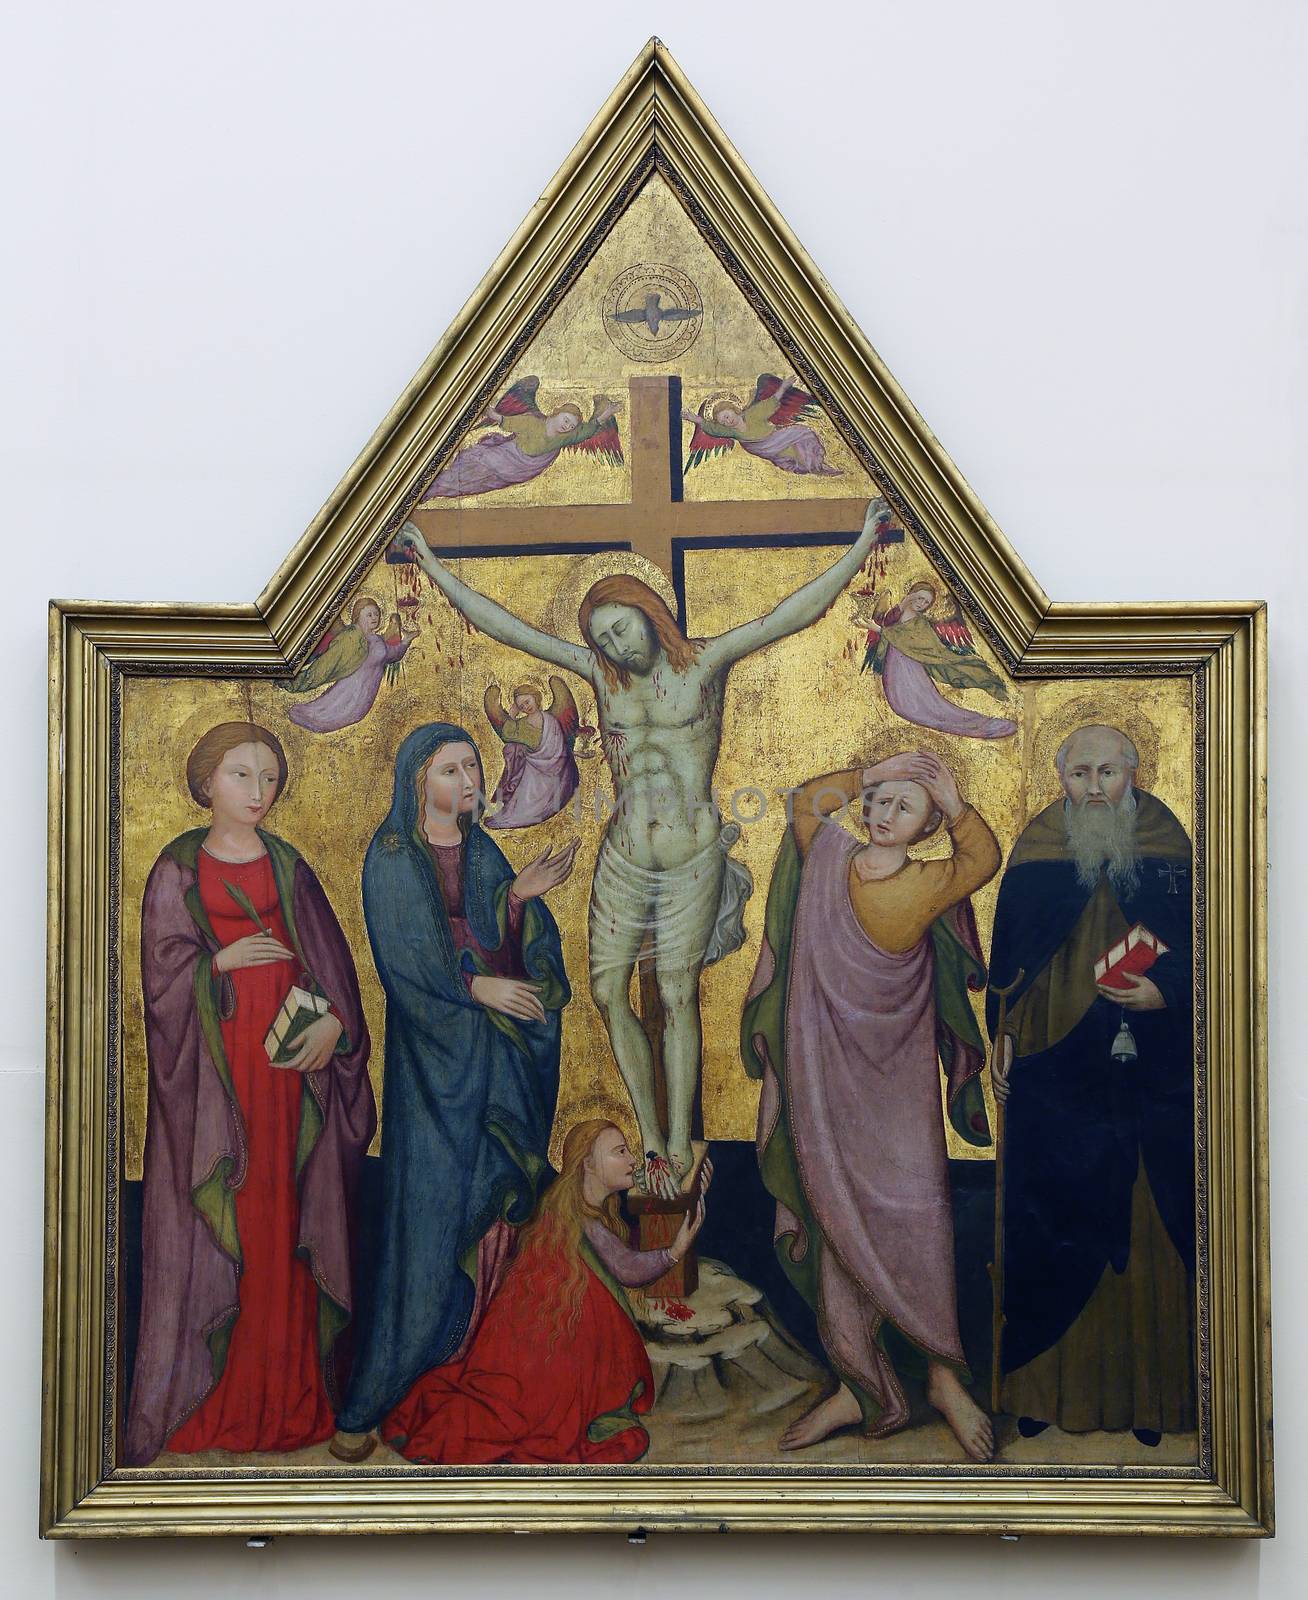 Maestro di San Verecondo: Crucifixion with Saints by atlas